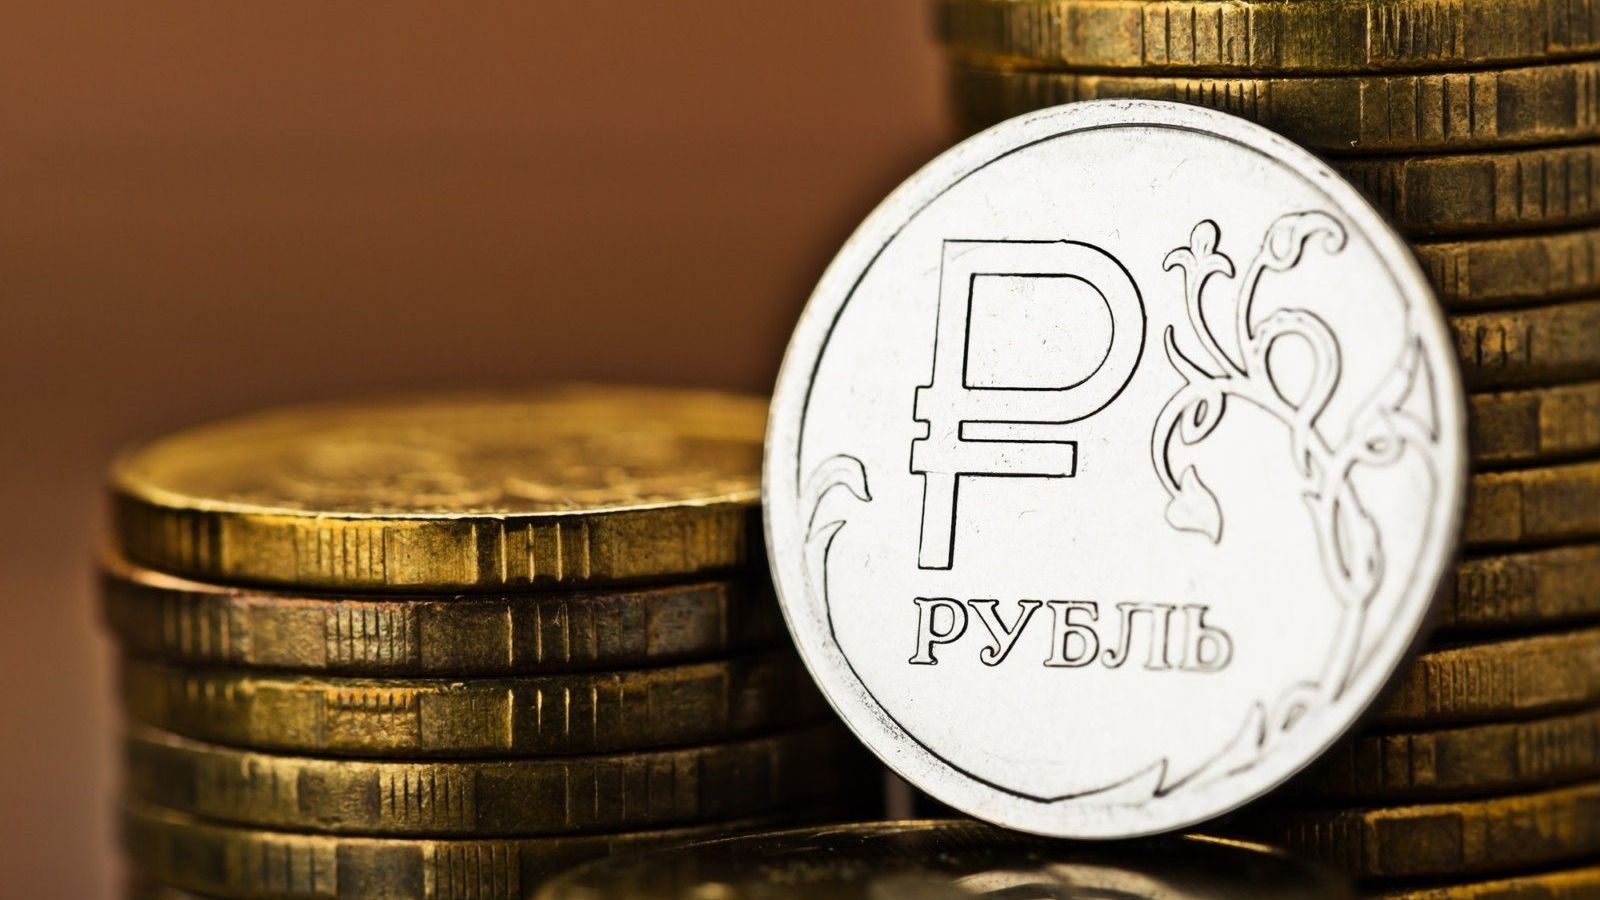 Рубль продолжает расти в цене, подорожал на 2.37% - официальные курсы валют